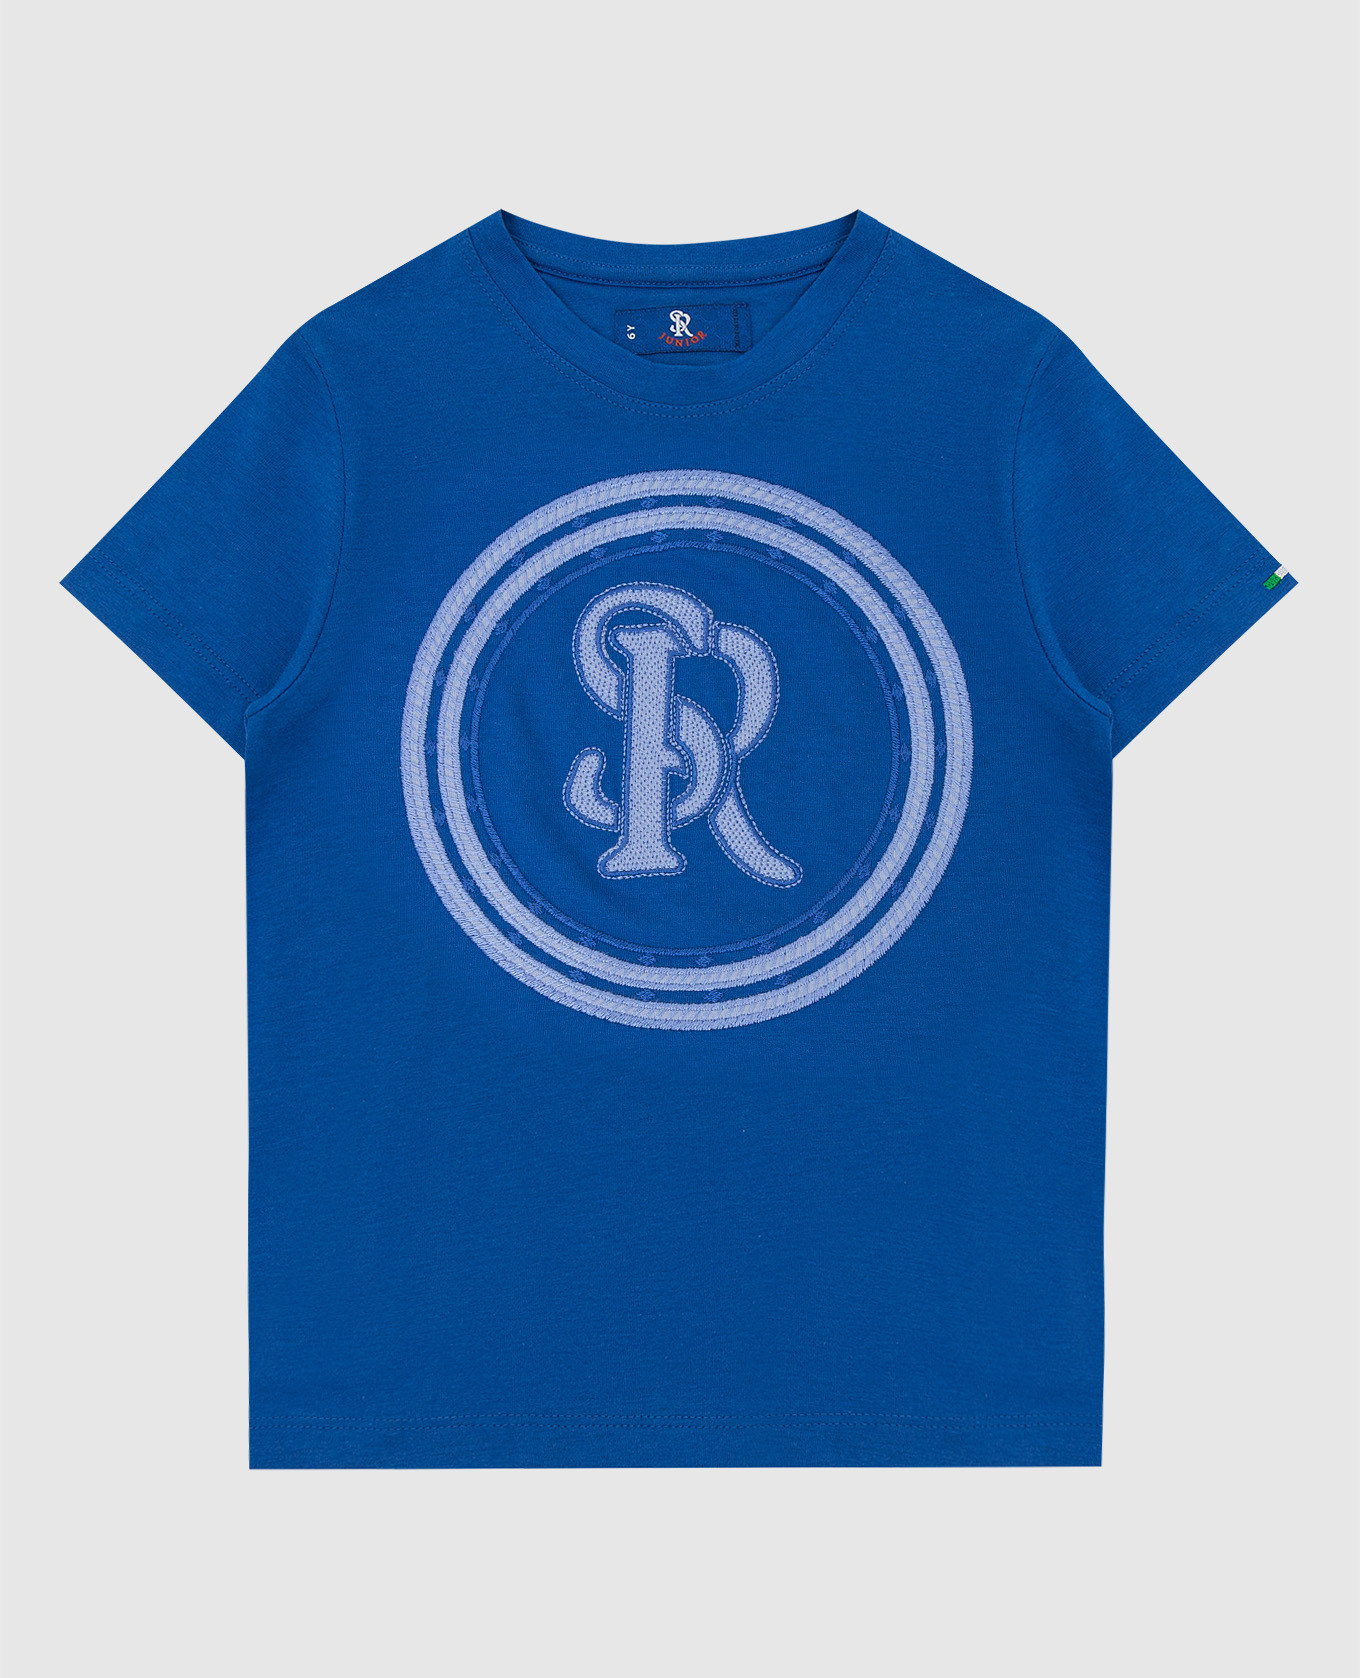 Children's blue T-shirt with an emblem